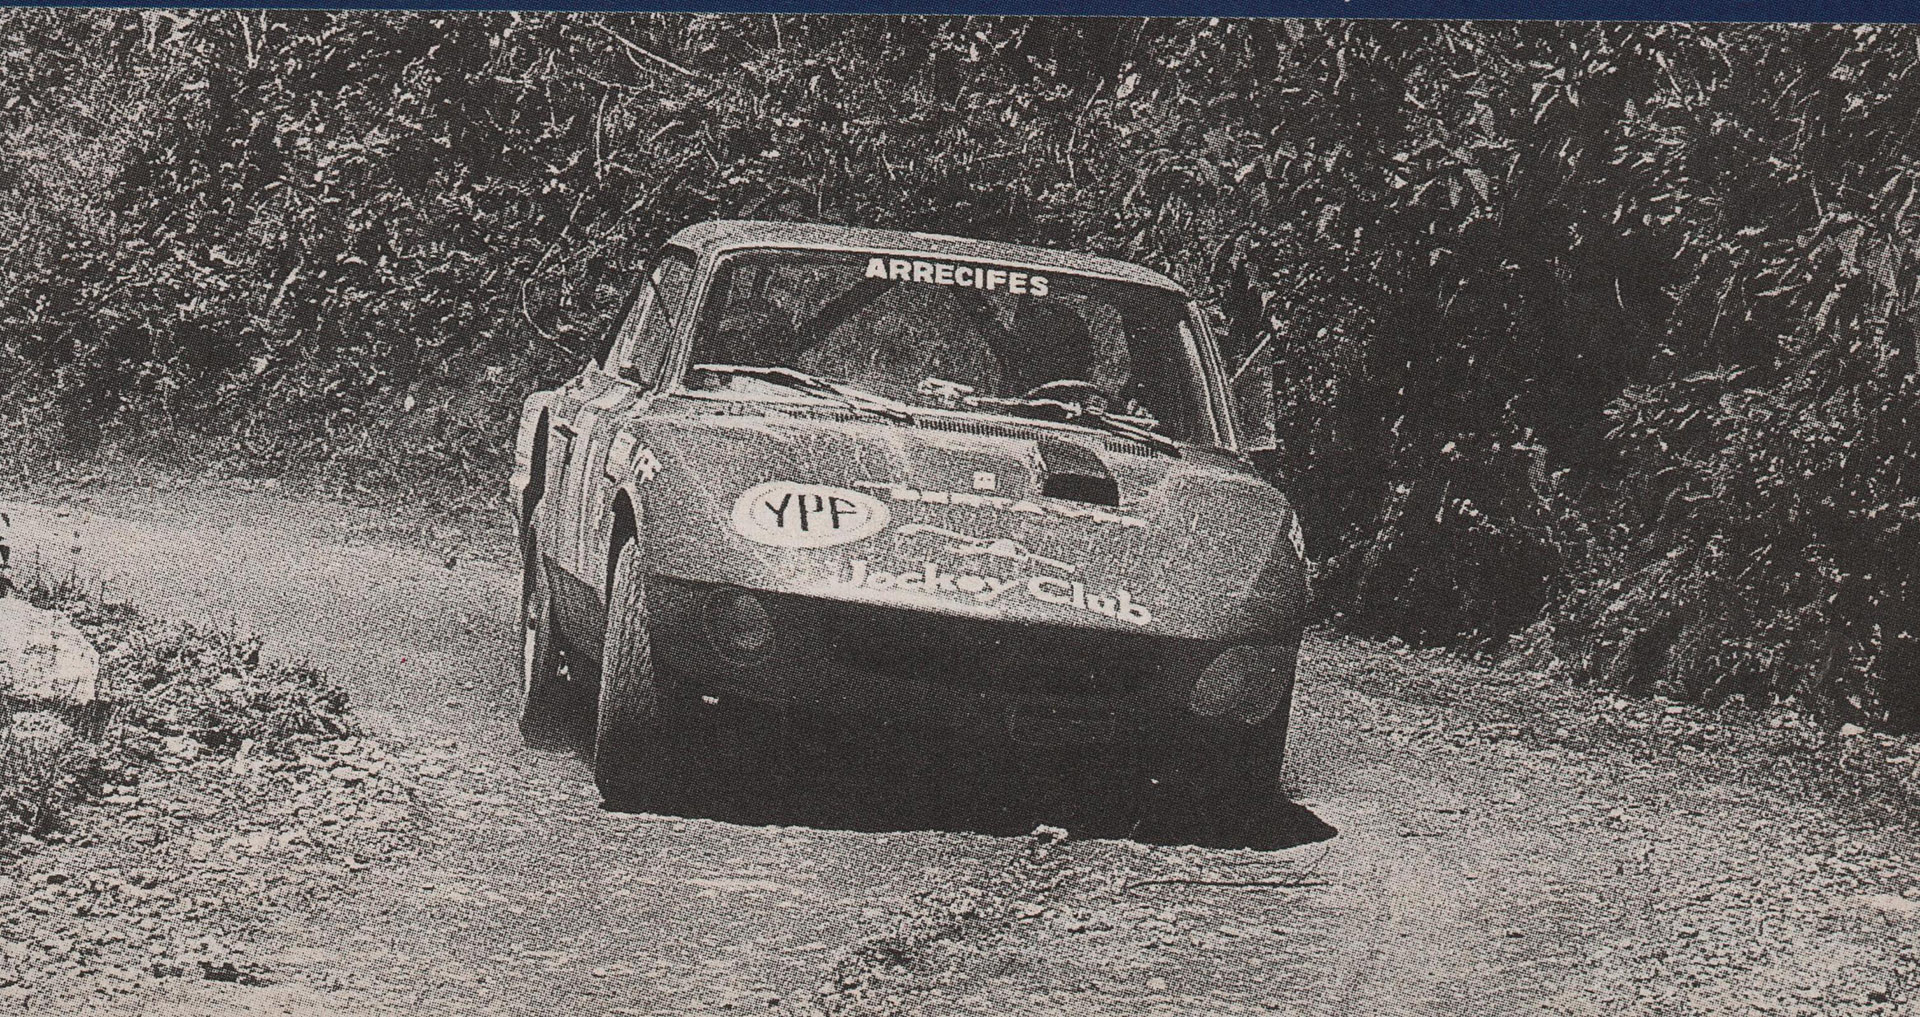 Luis Rubén Di Palma con el Torino campeón de TC en 1971 (Archivo Revista Corsa)

